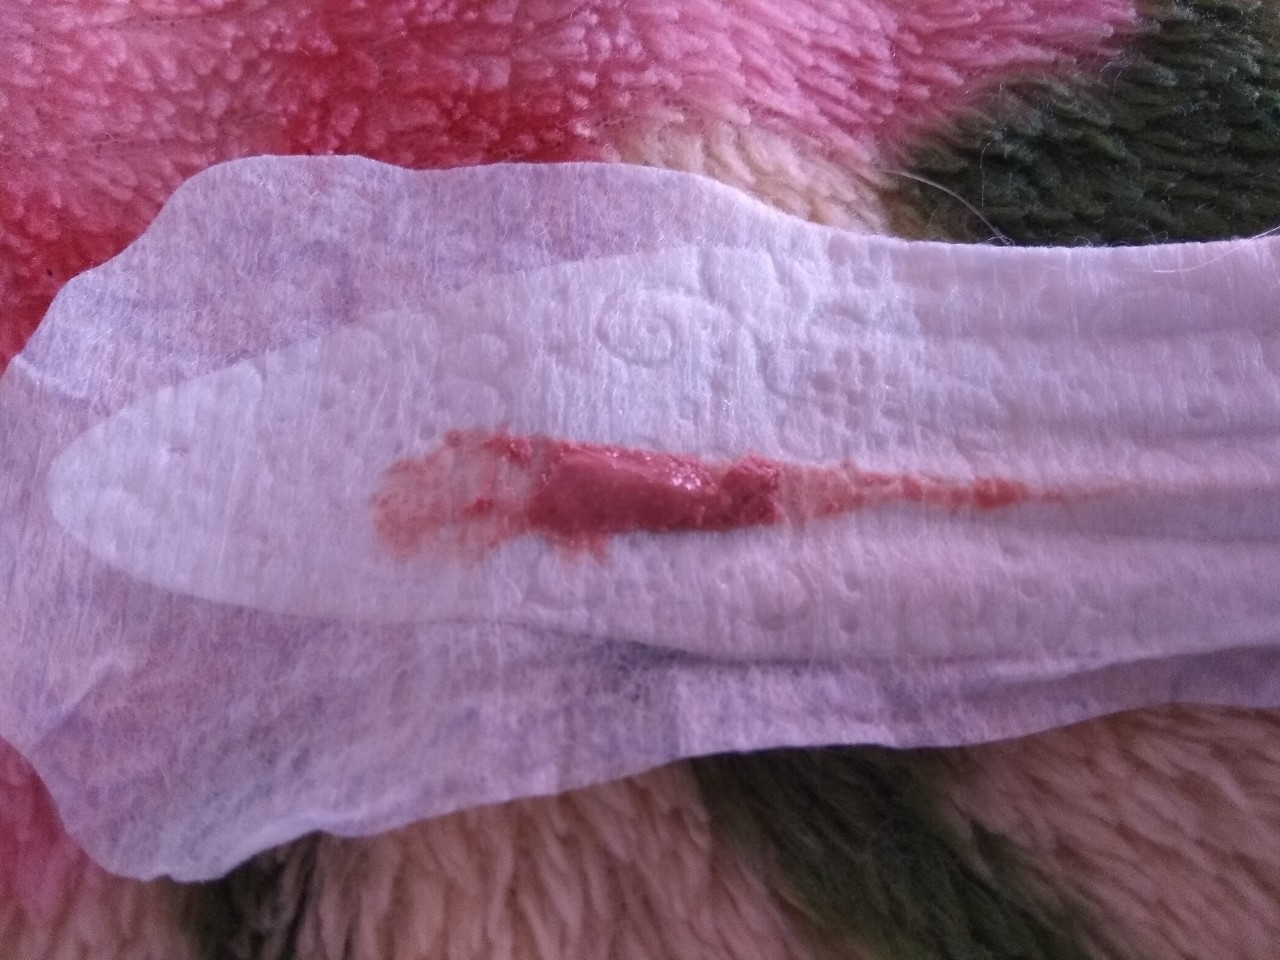 кровяные выделения во время оргазма фото 53